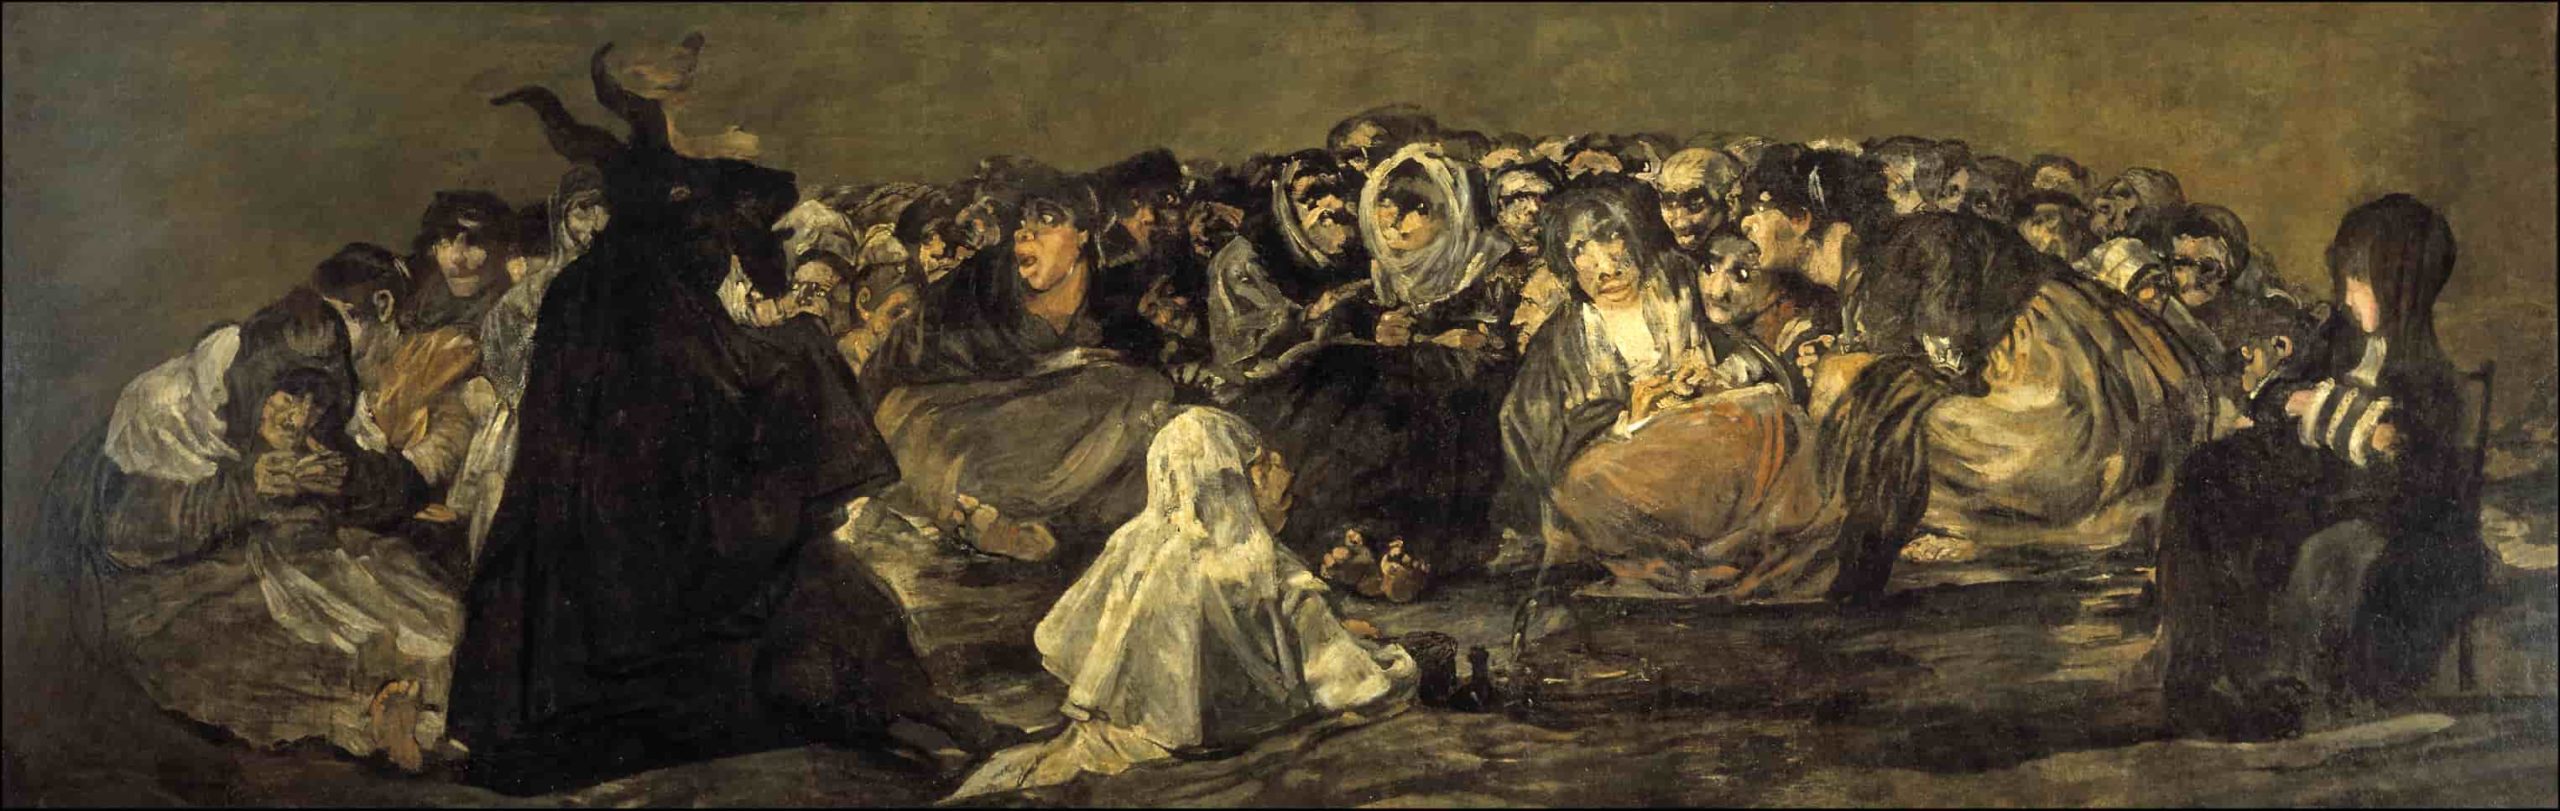 Le sabbat des sorcières ou le Grand Bouc, 1819-1823, Francisco de Goya